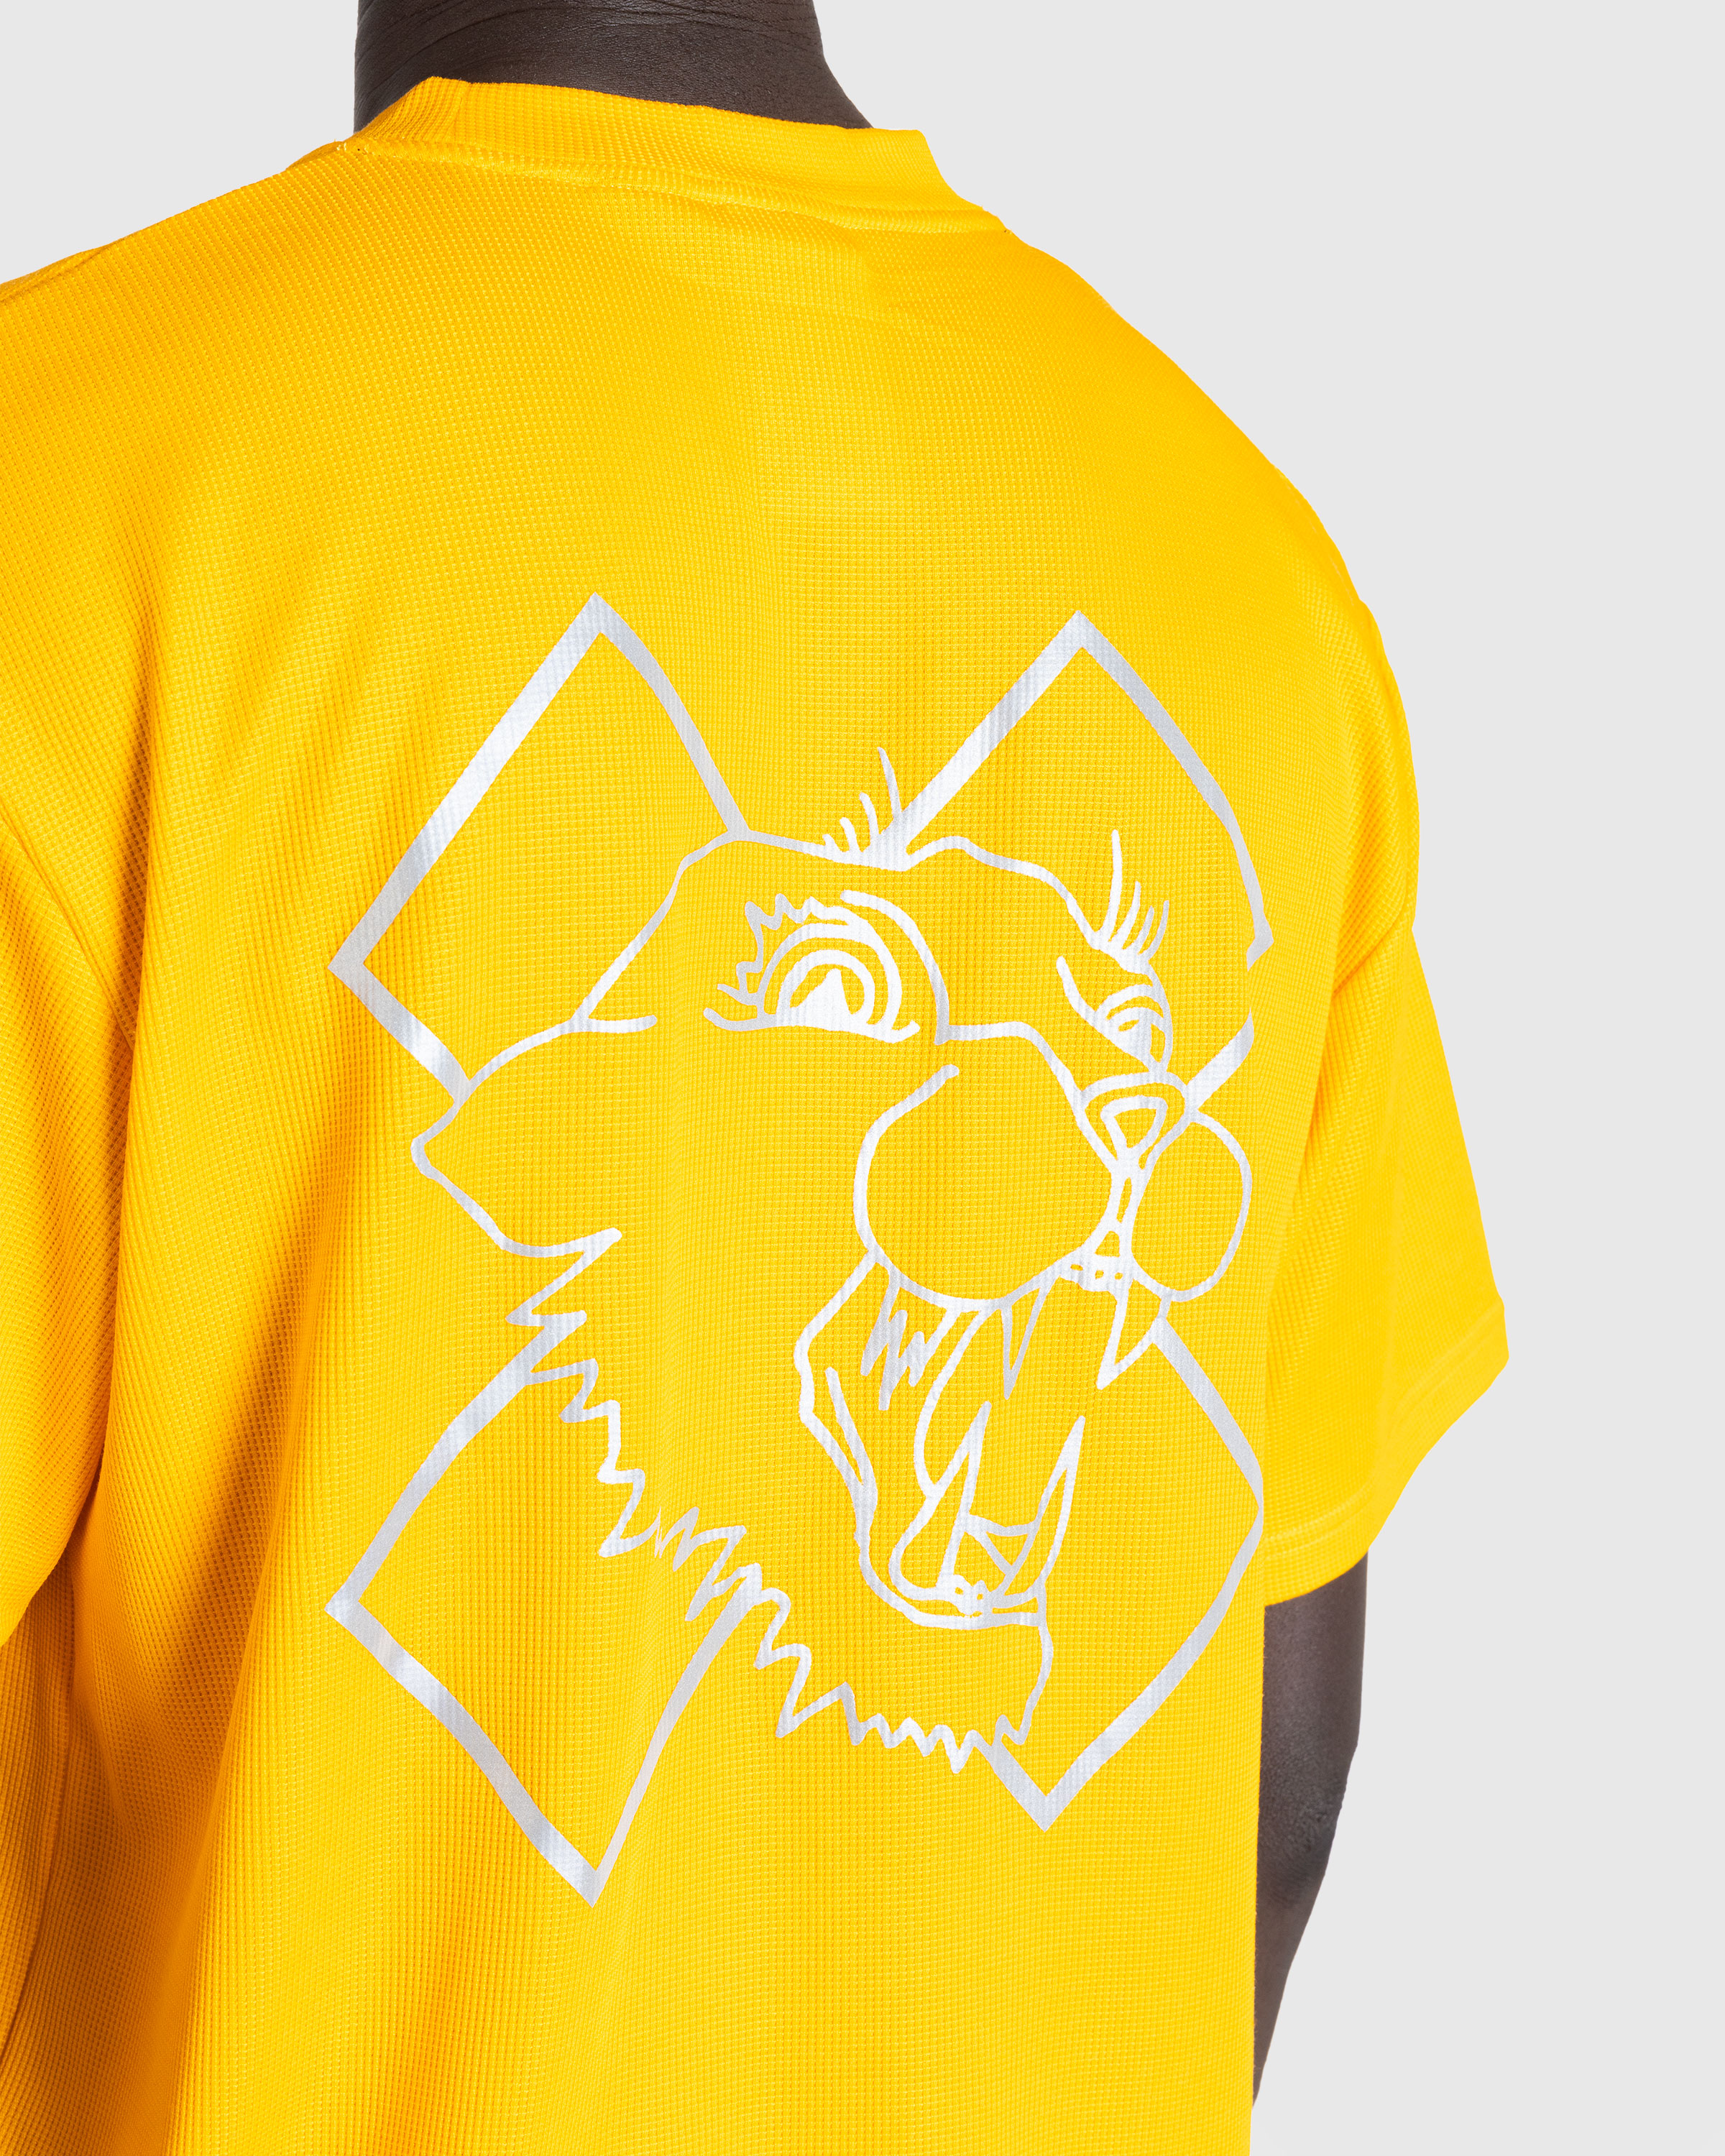 Nike x Patta – Running Team T-Shirt Sundial - T-Shirts - Yellow - Image 5